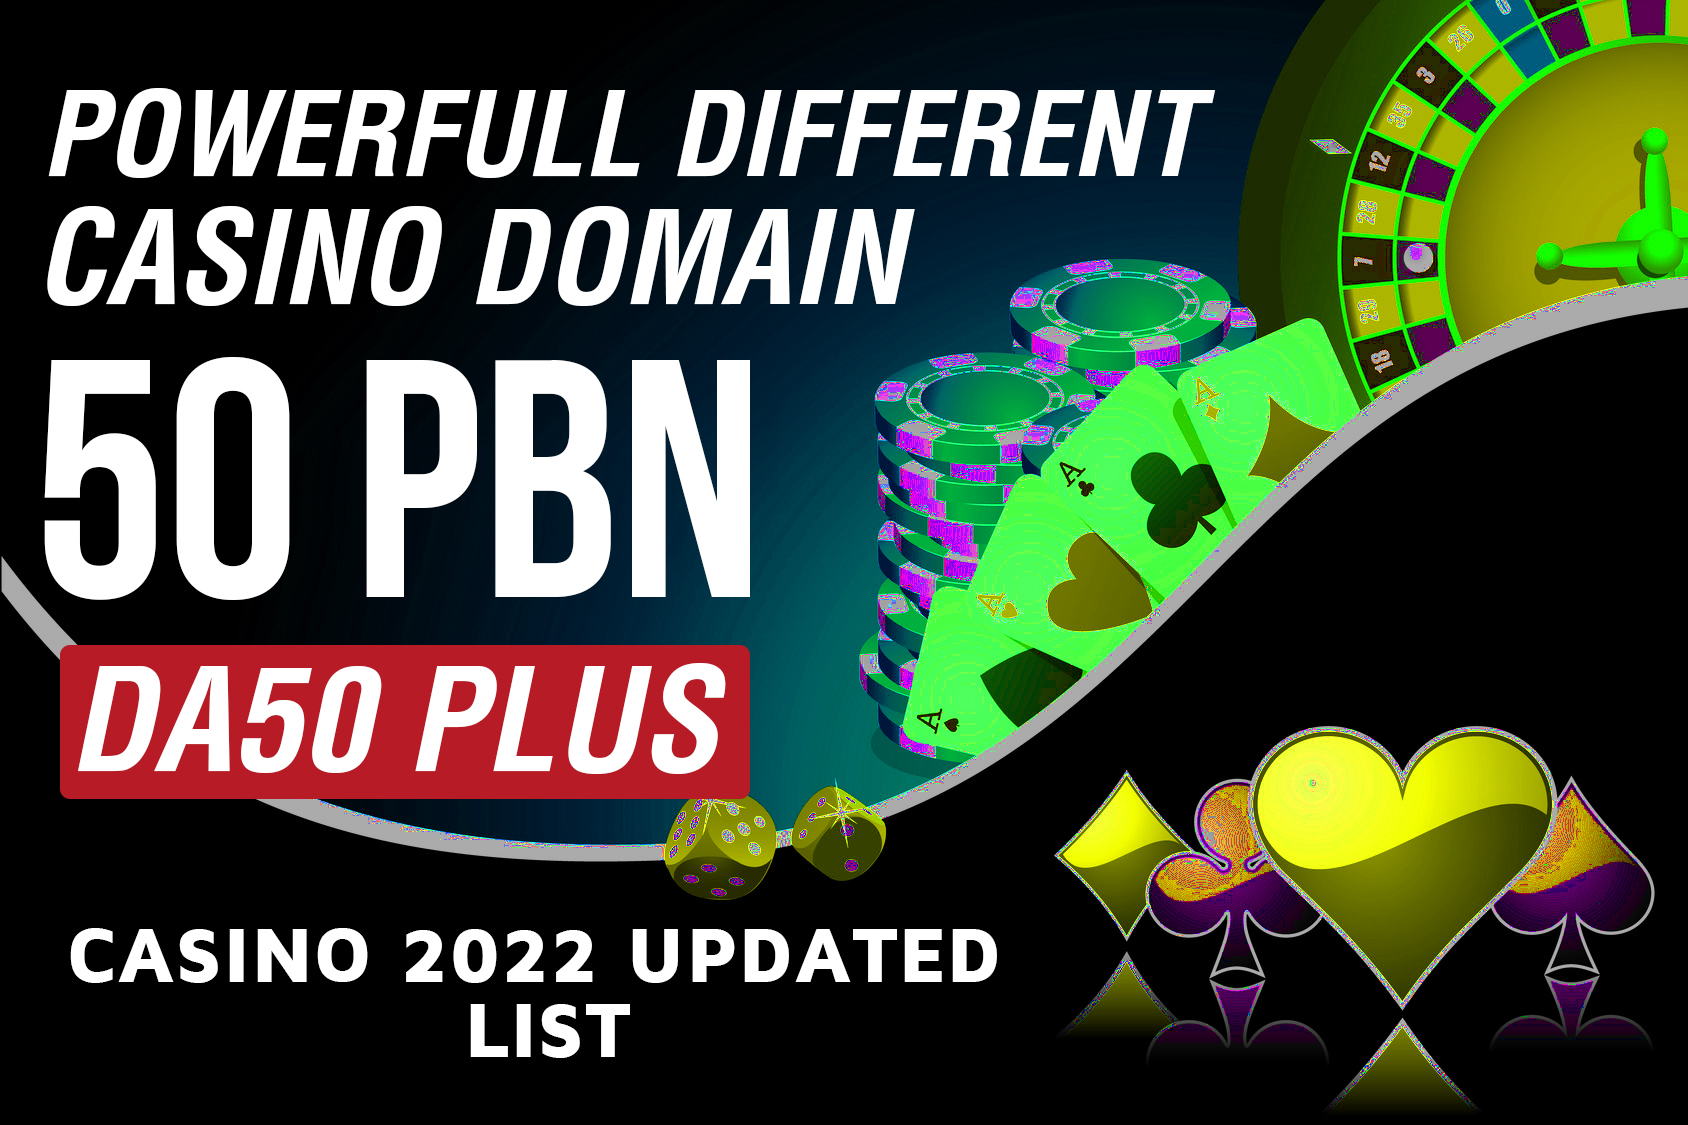 PowerFull Different Casino Domain 50 PBN DA50 Plus Casino 2022 Updated List